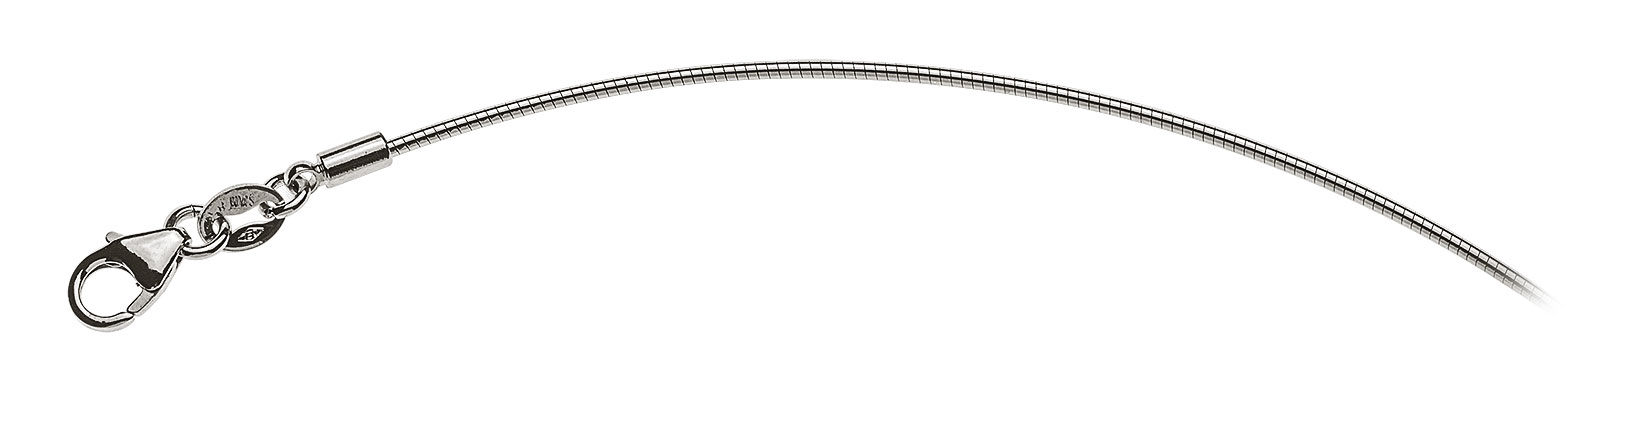 AURONOS Prestige Halskette Weissgold 18K Omegakette 42cm 1.0mm